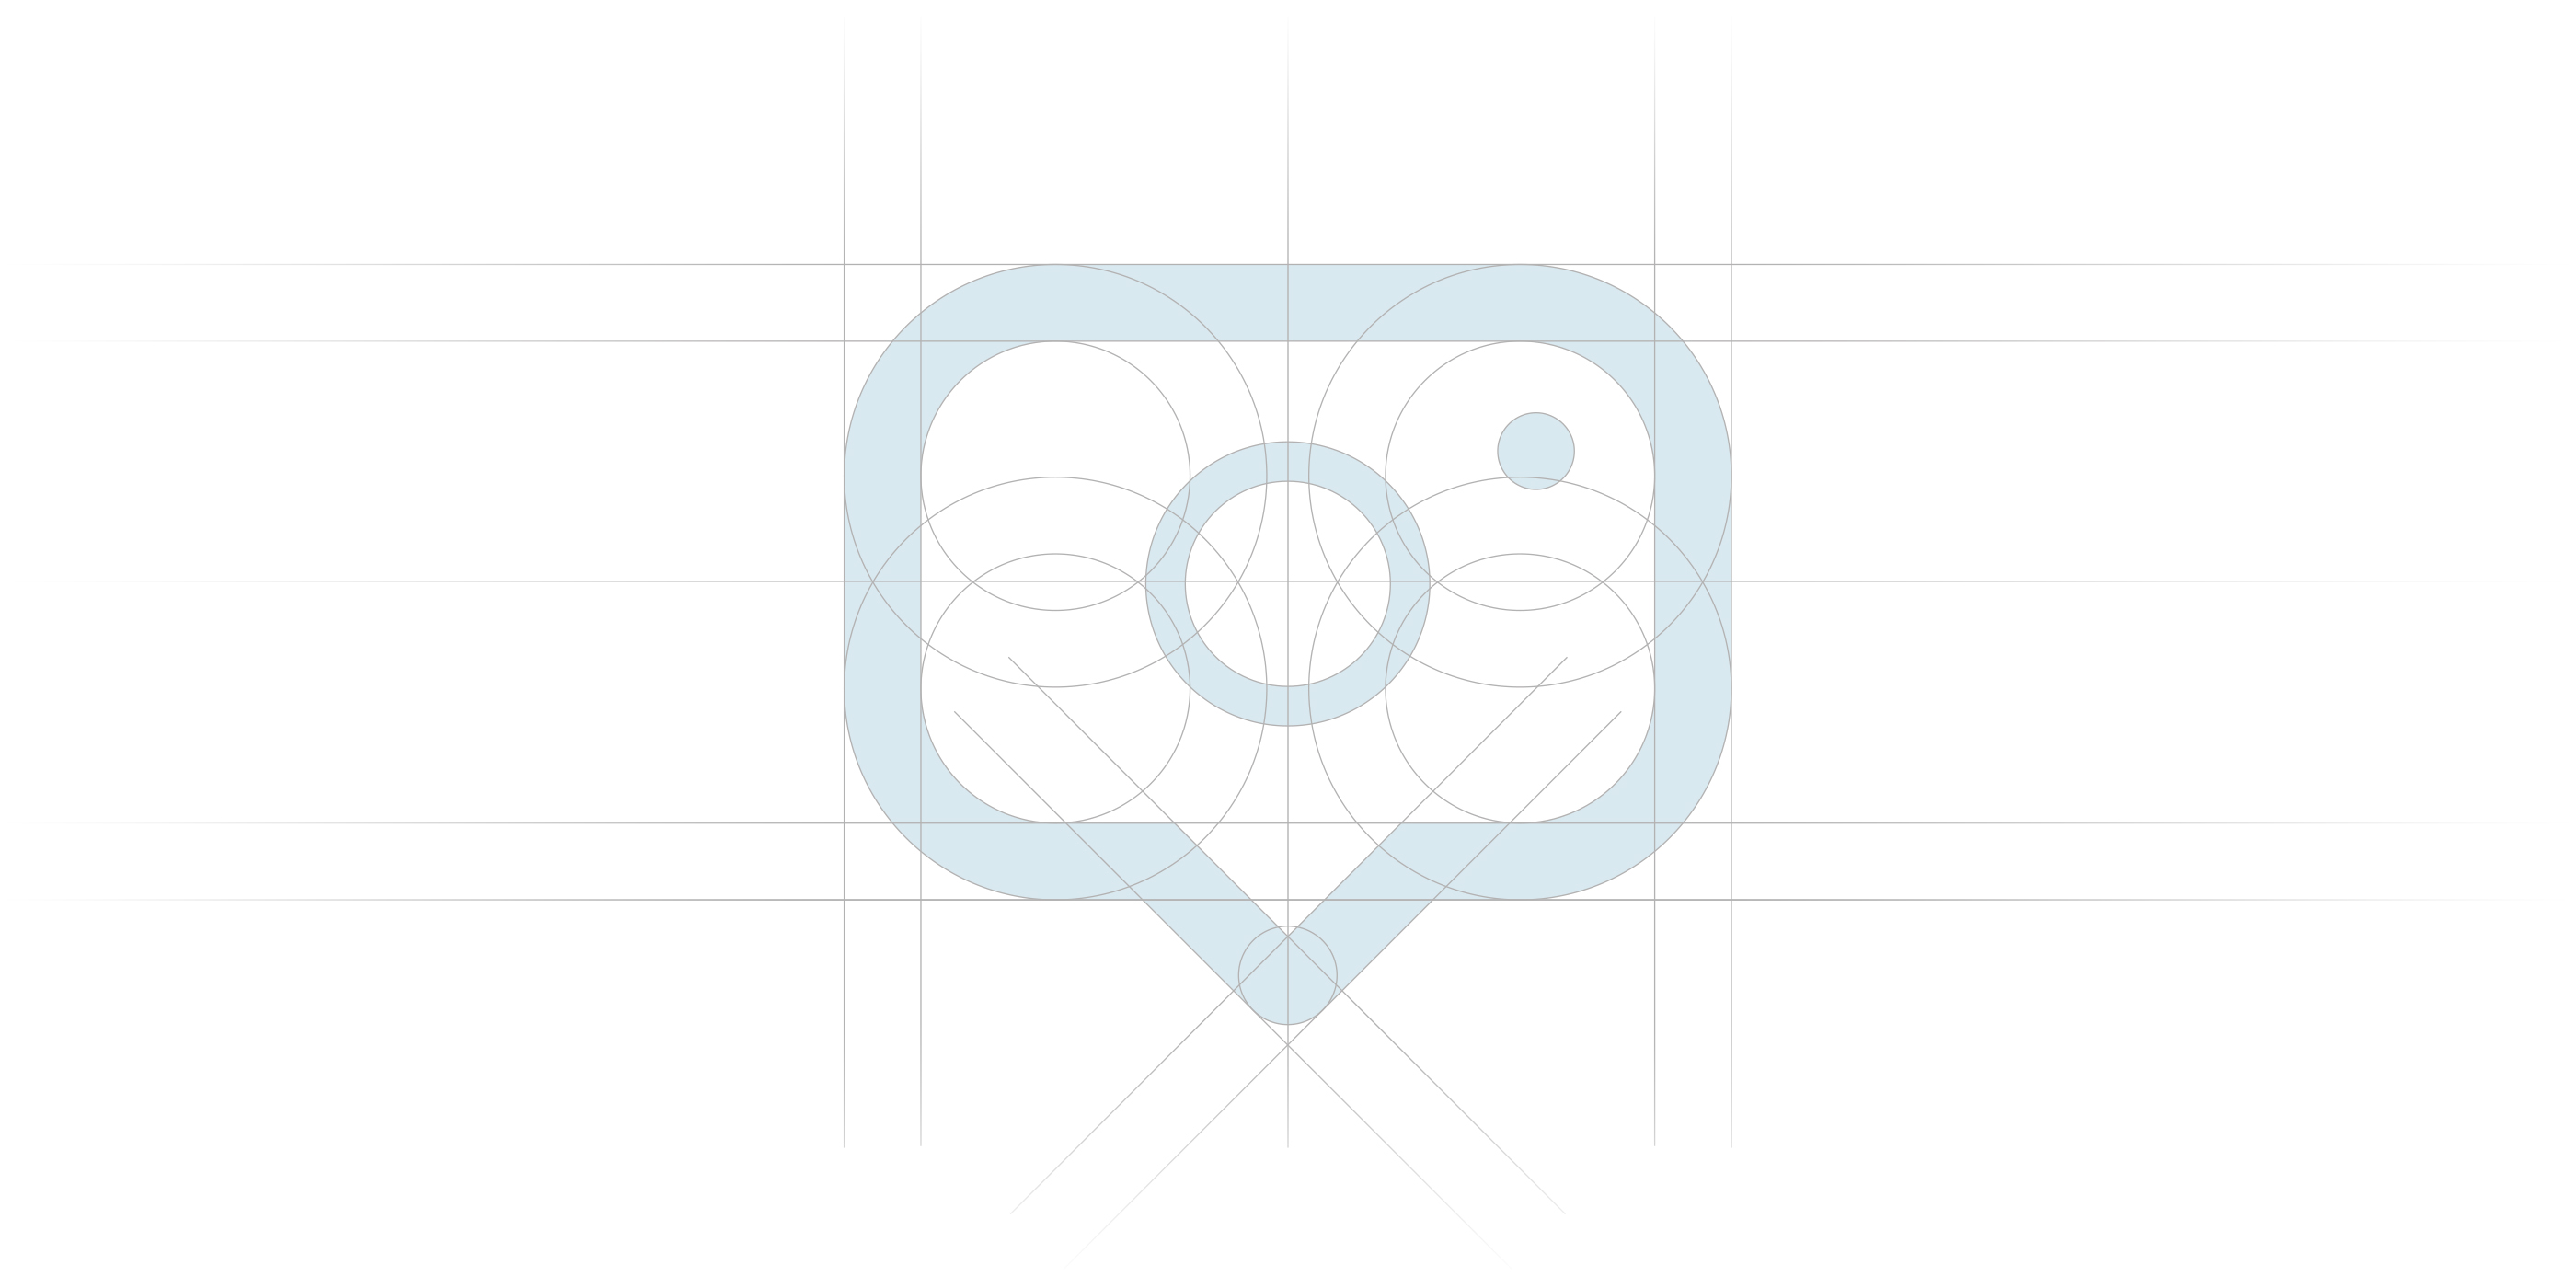 Vision DPI app design, development and logo design